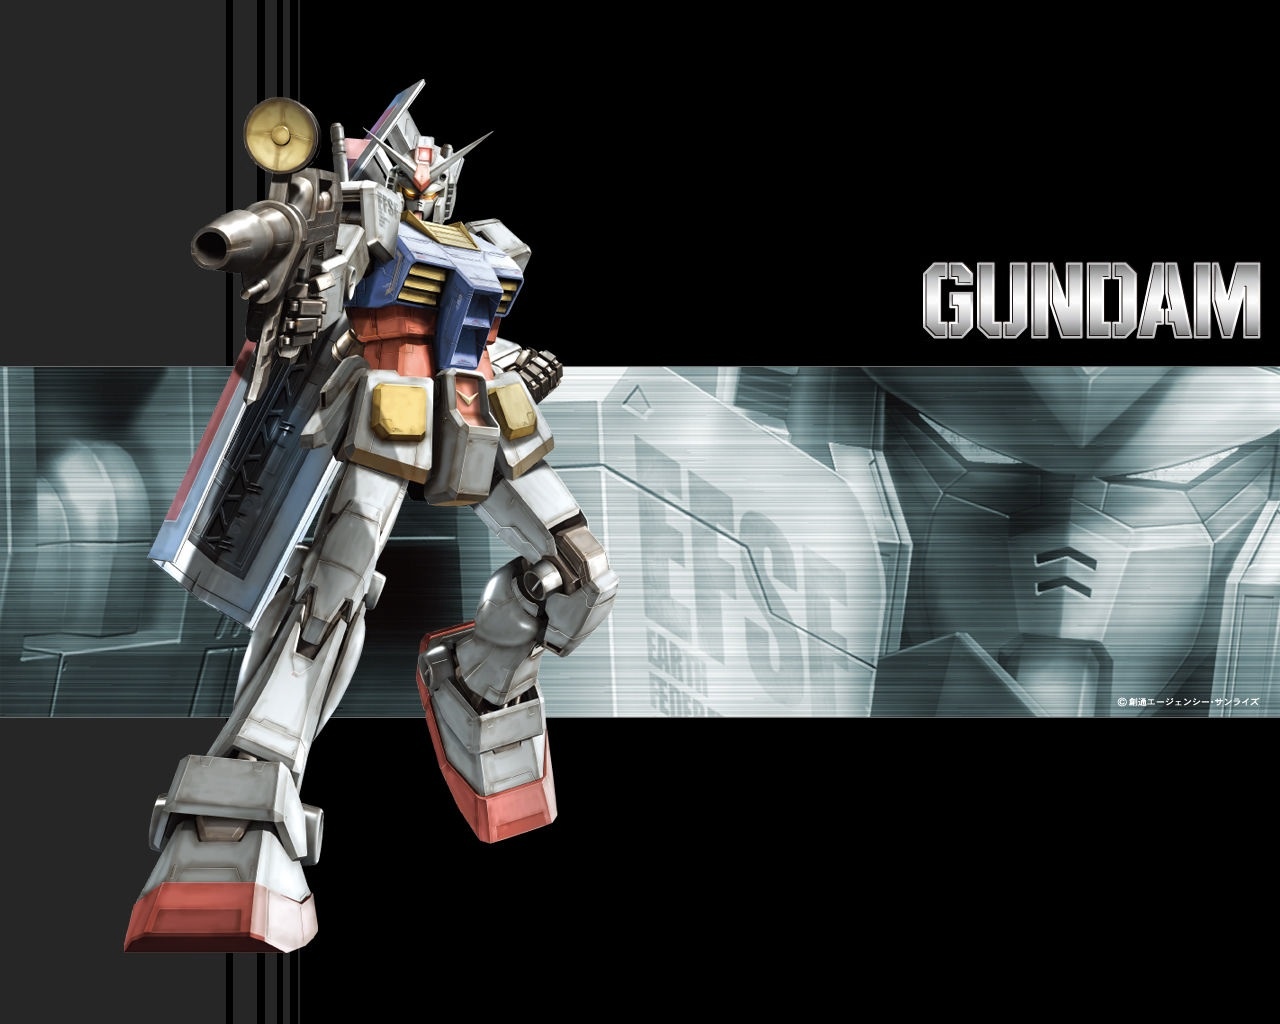 機動戦士ガンダム 壁紙 画像 歴代ガンダム モビルスーツ Gundam Wal 機動戦士ガンダム 壁紙 画像 歴代ガンダム モビルスーツ ザク Gundam Naver まとめ